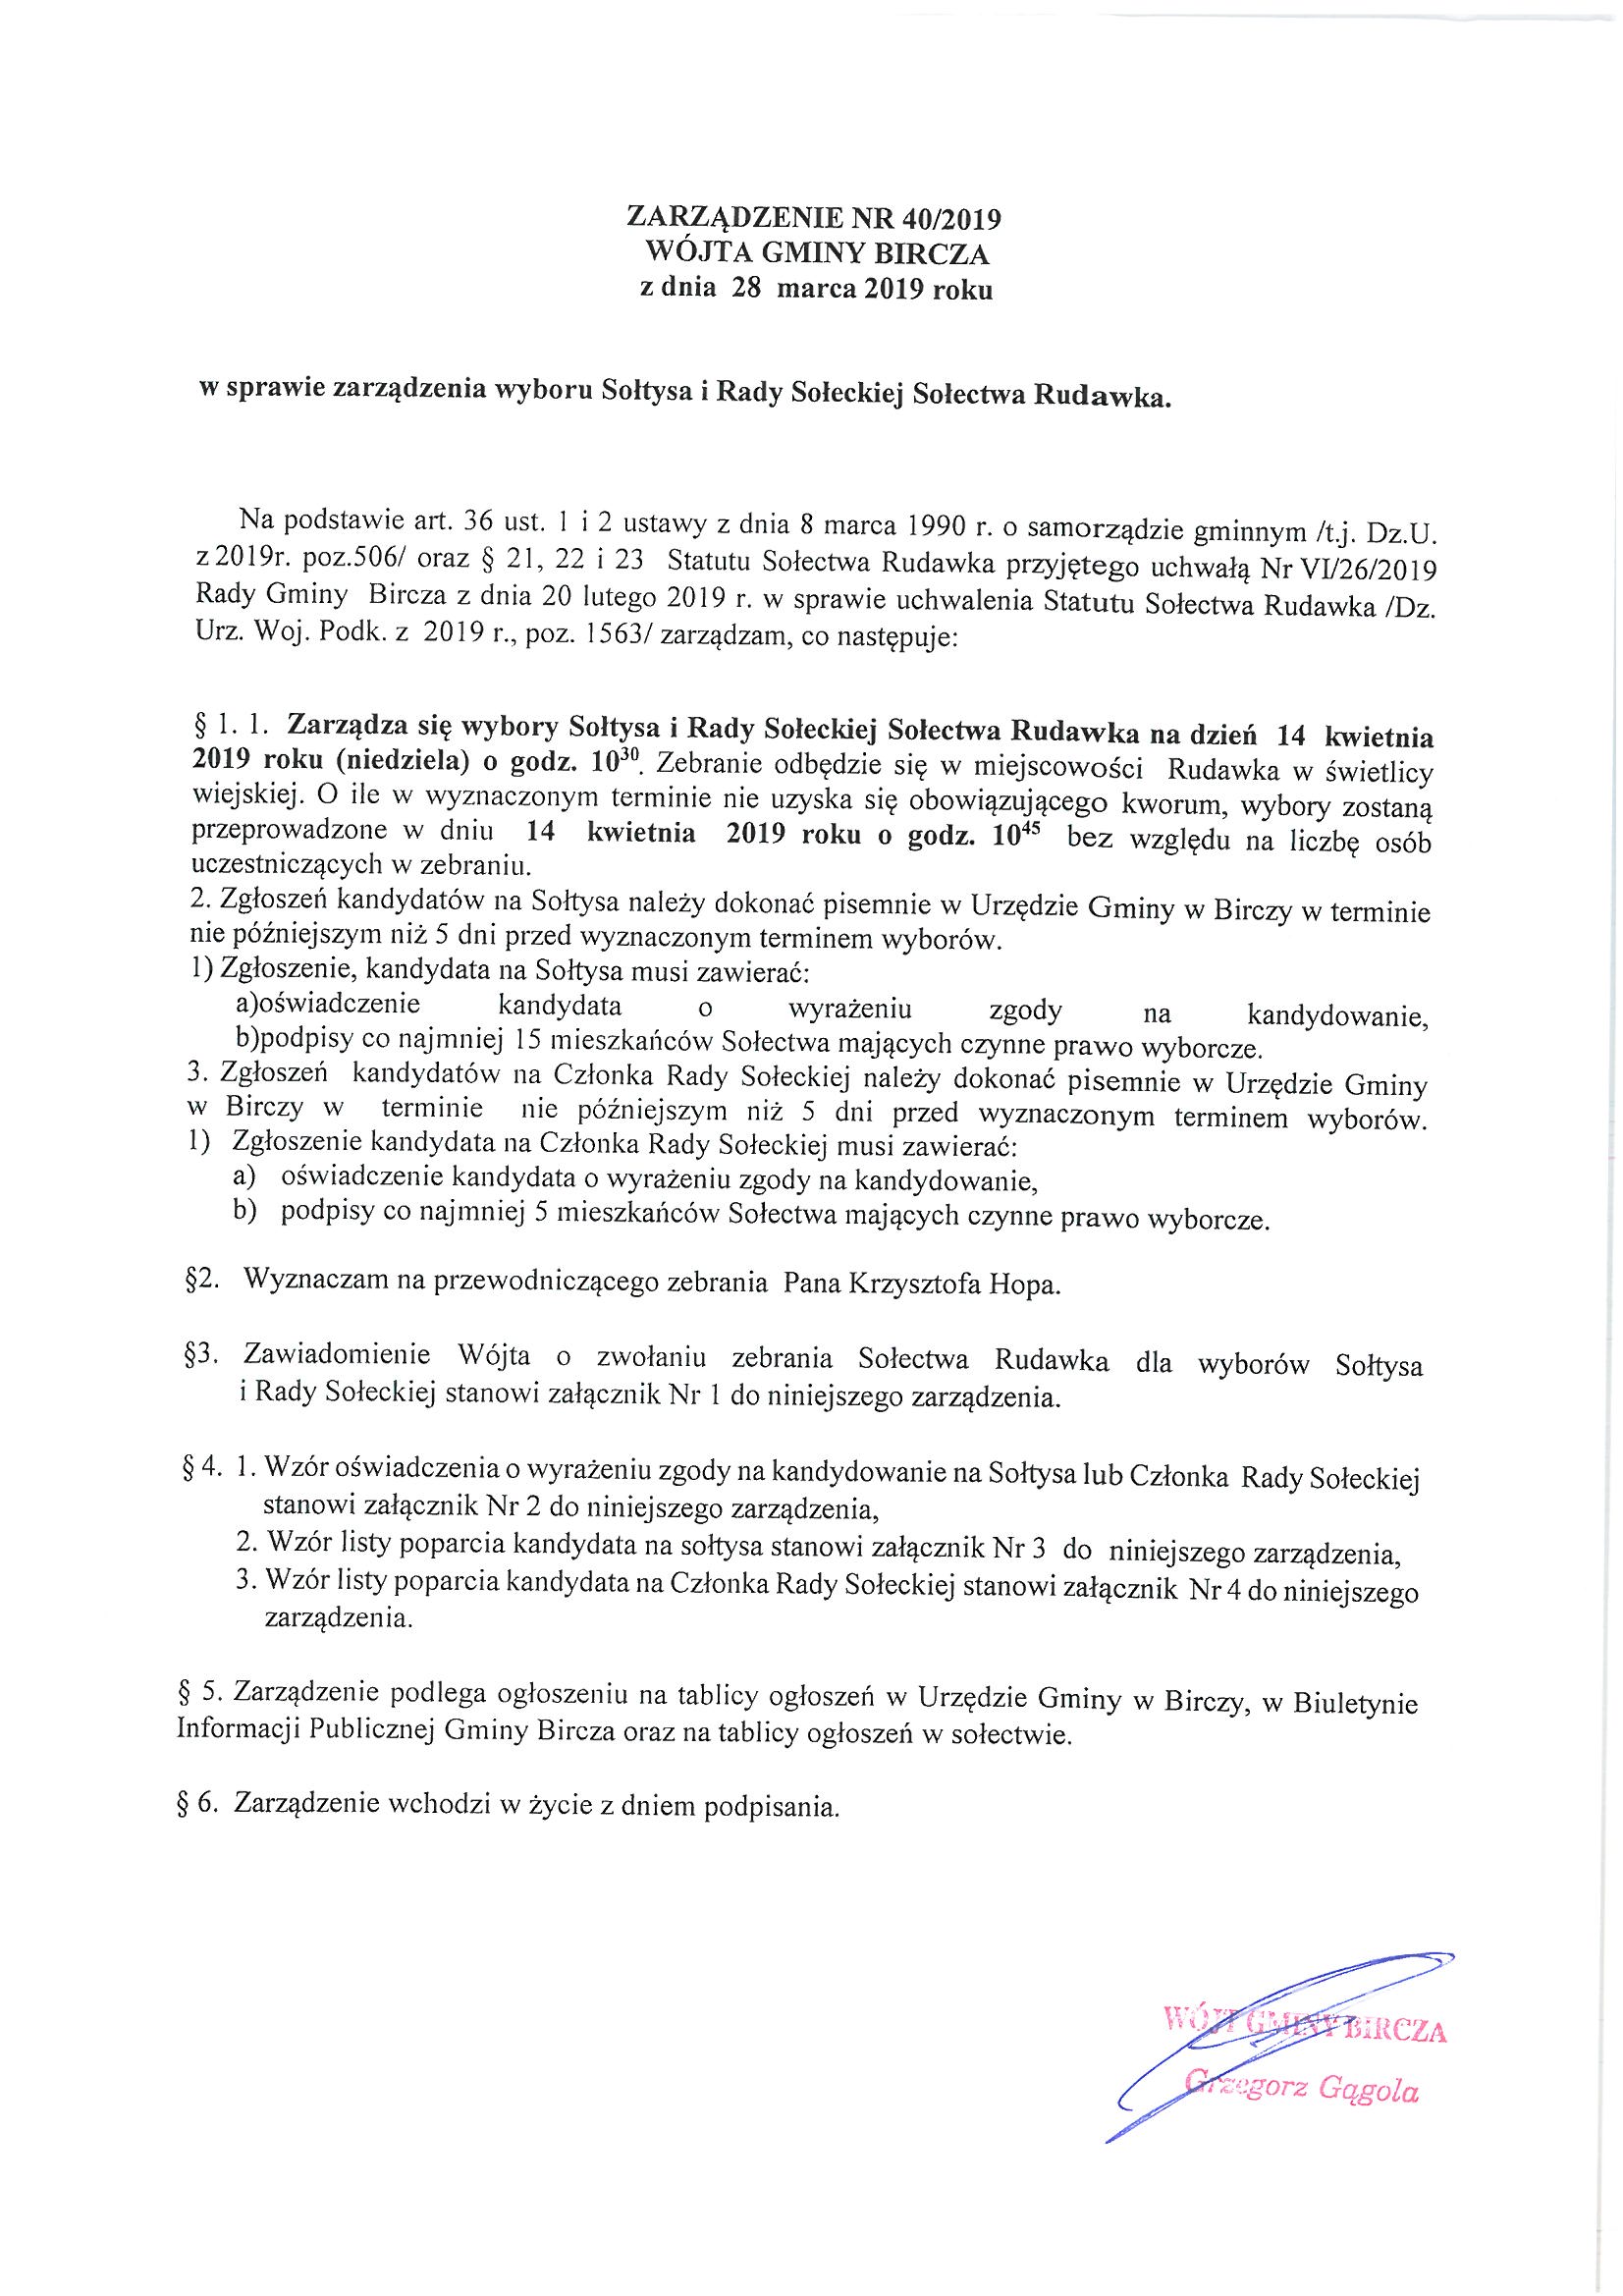 ------- Zarządzenie w sprawie wyboru Sołtysa i Rady Sołeckiej Rudawka.jpg